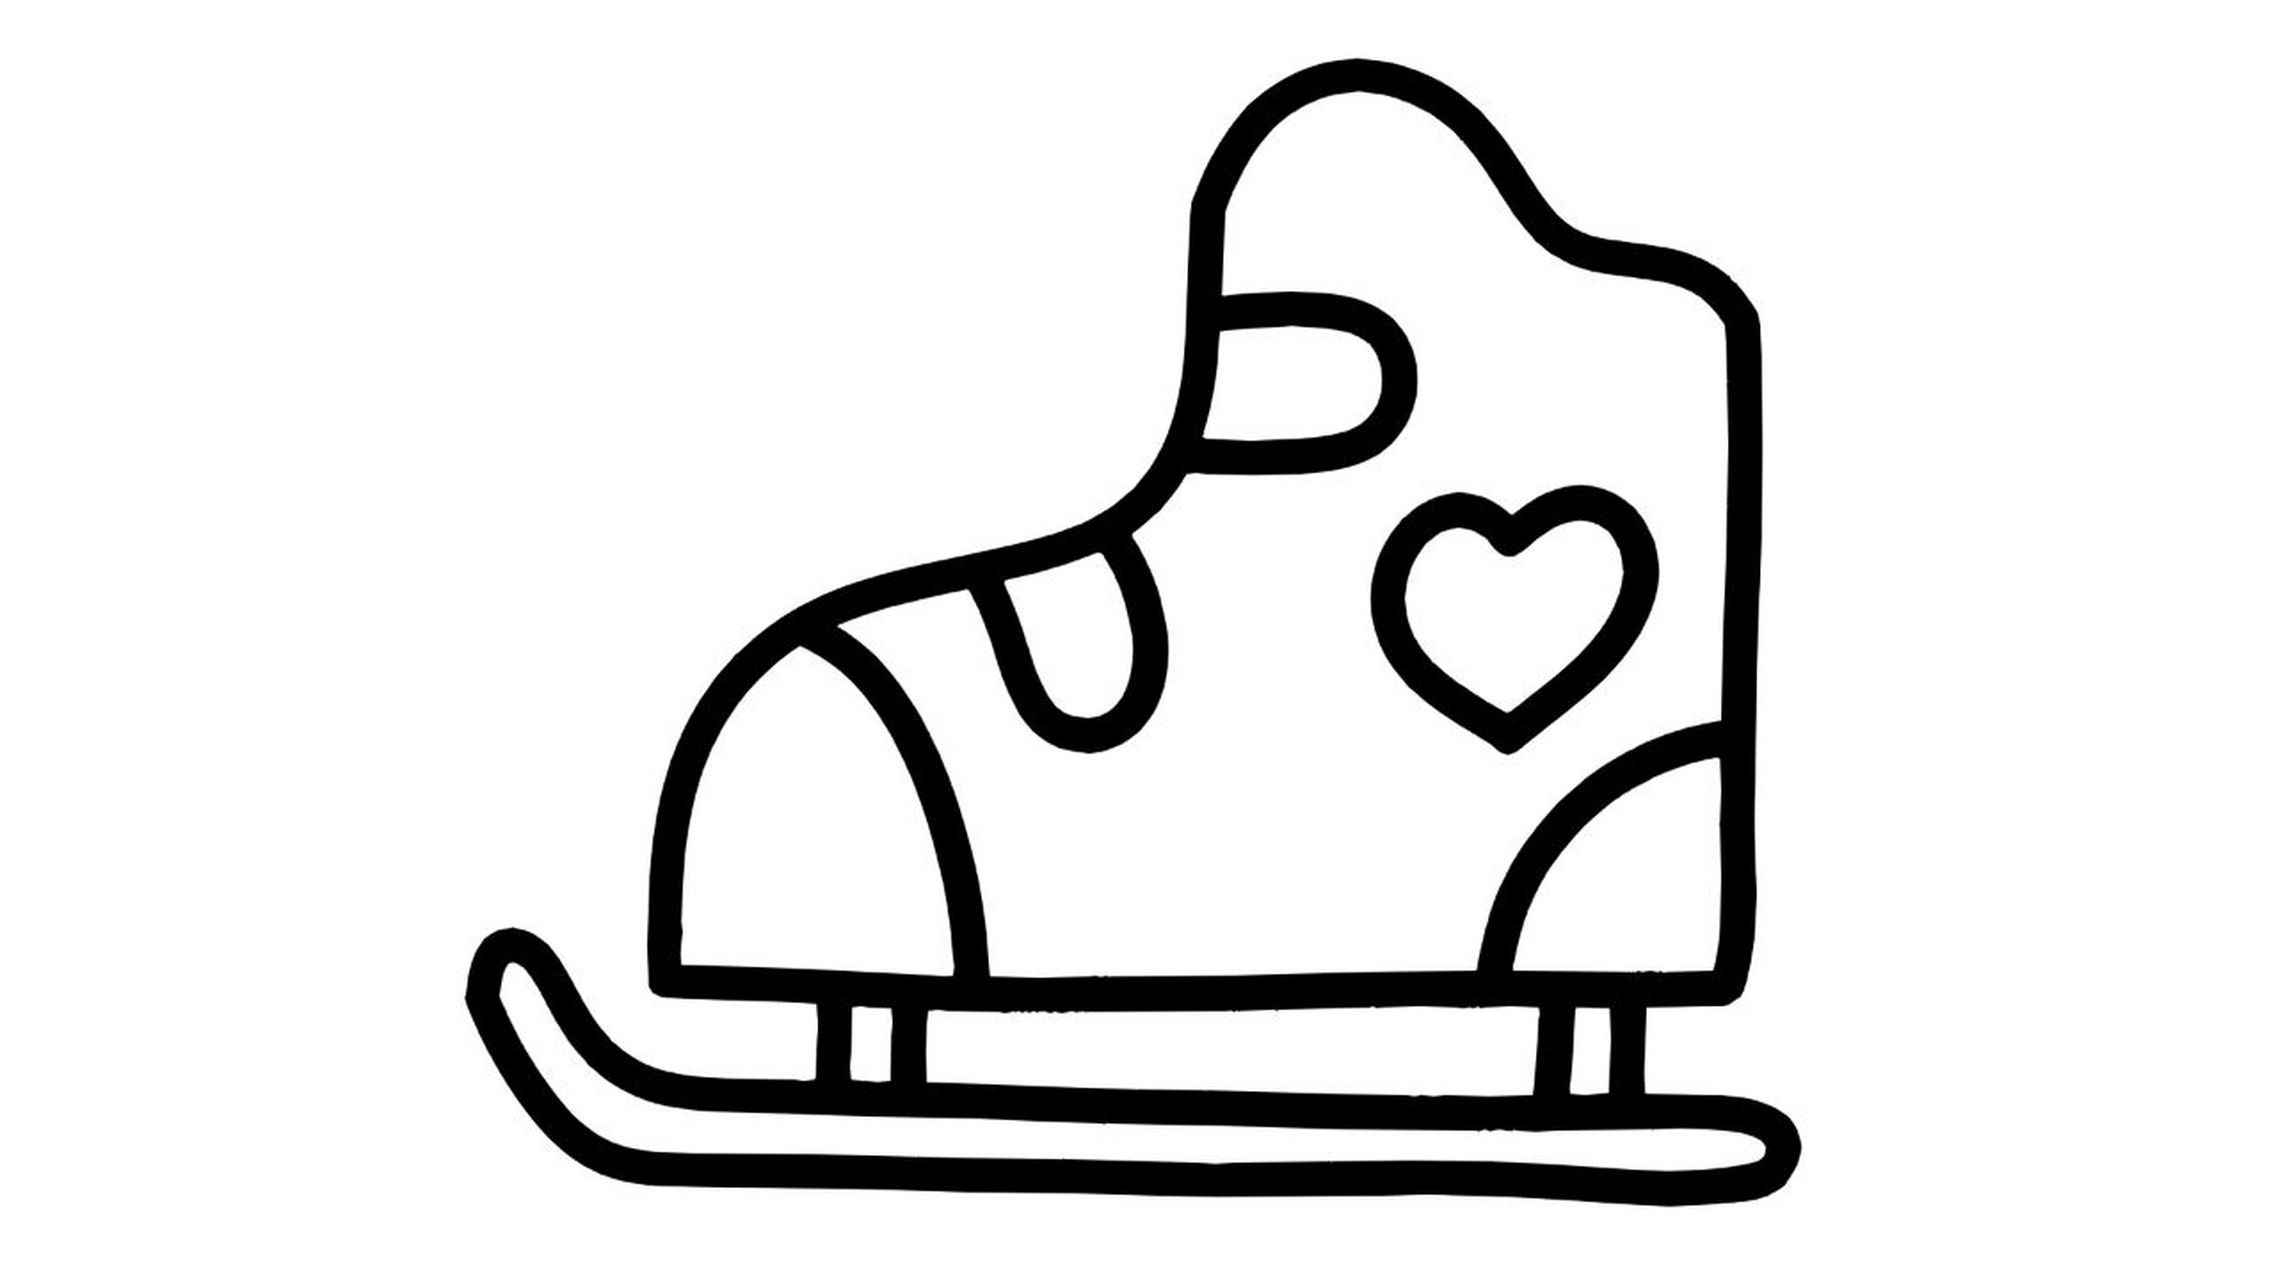 轮滑鞋简笔画 简单图片